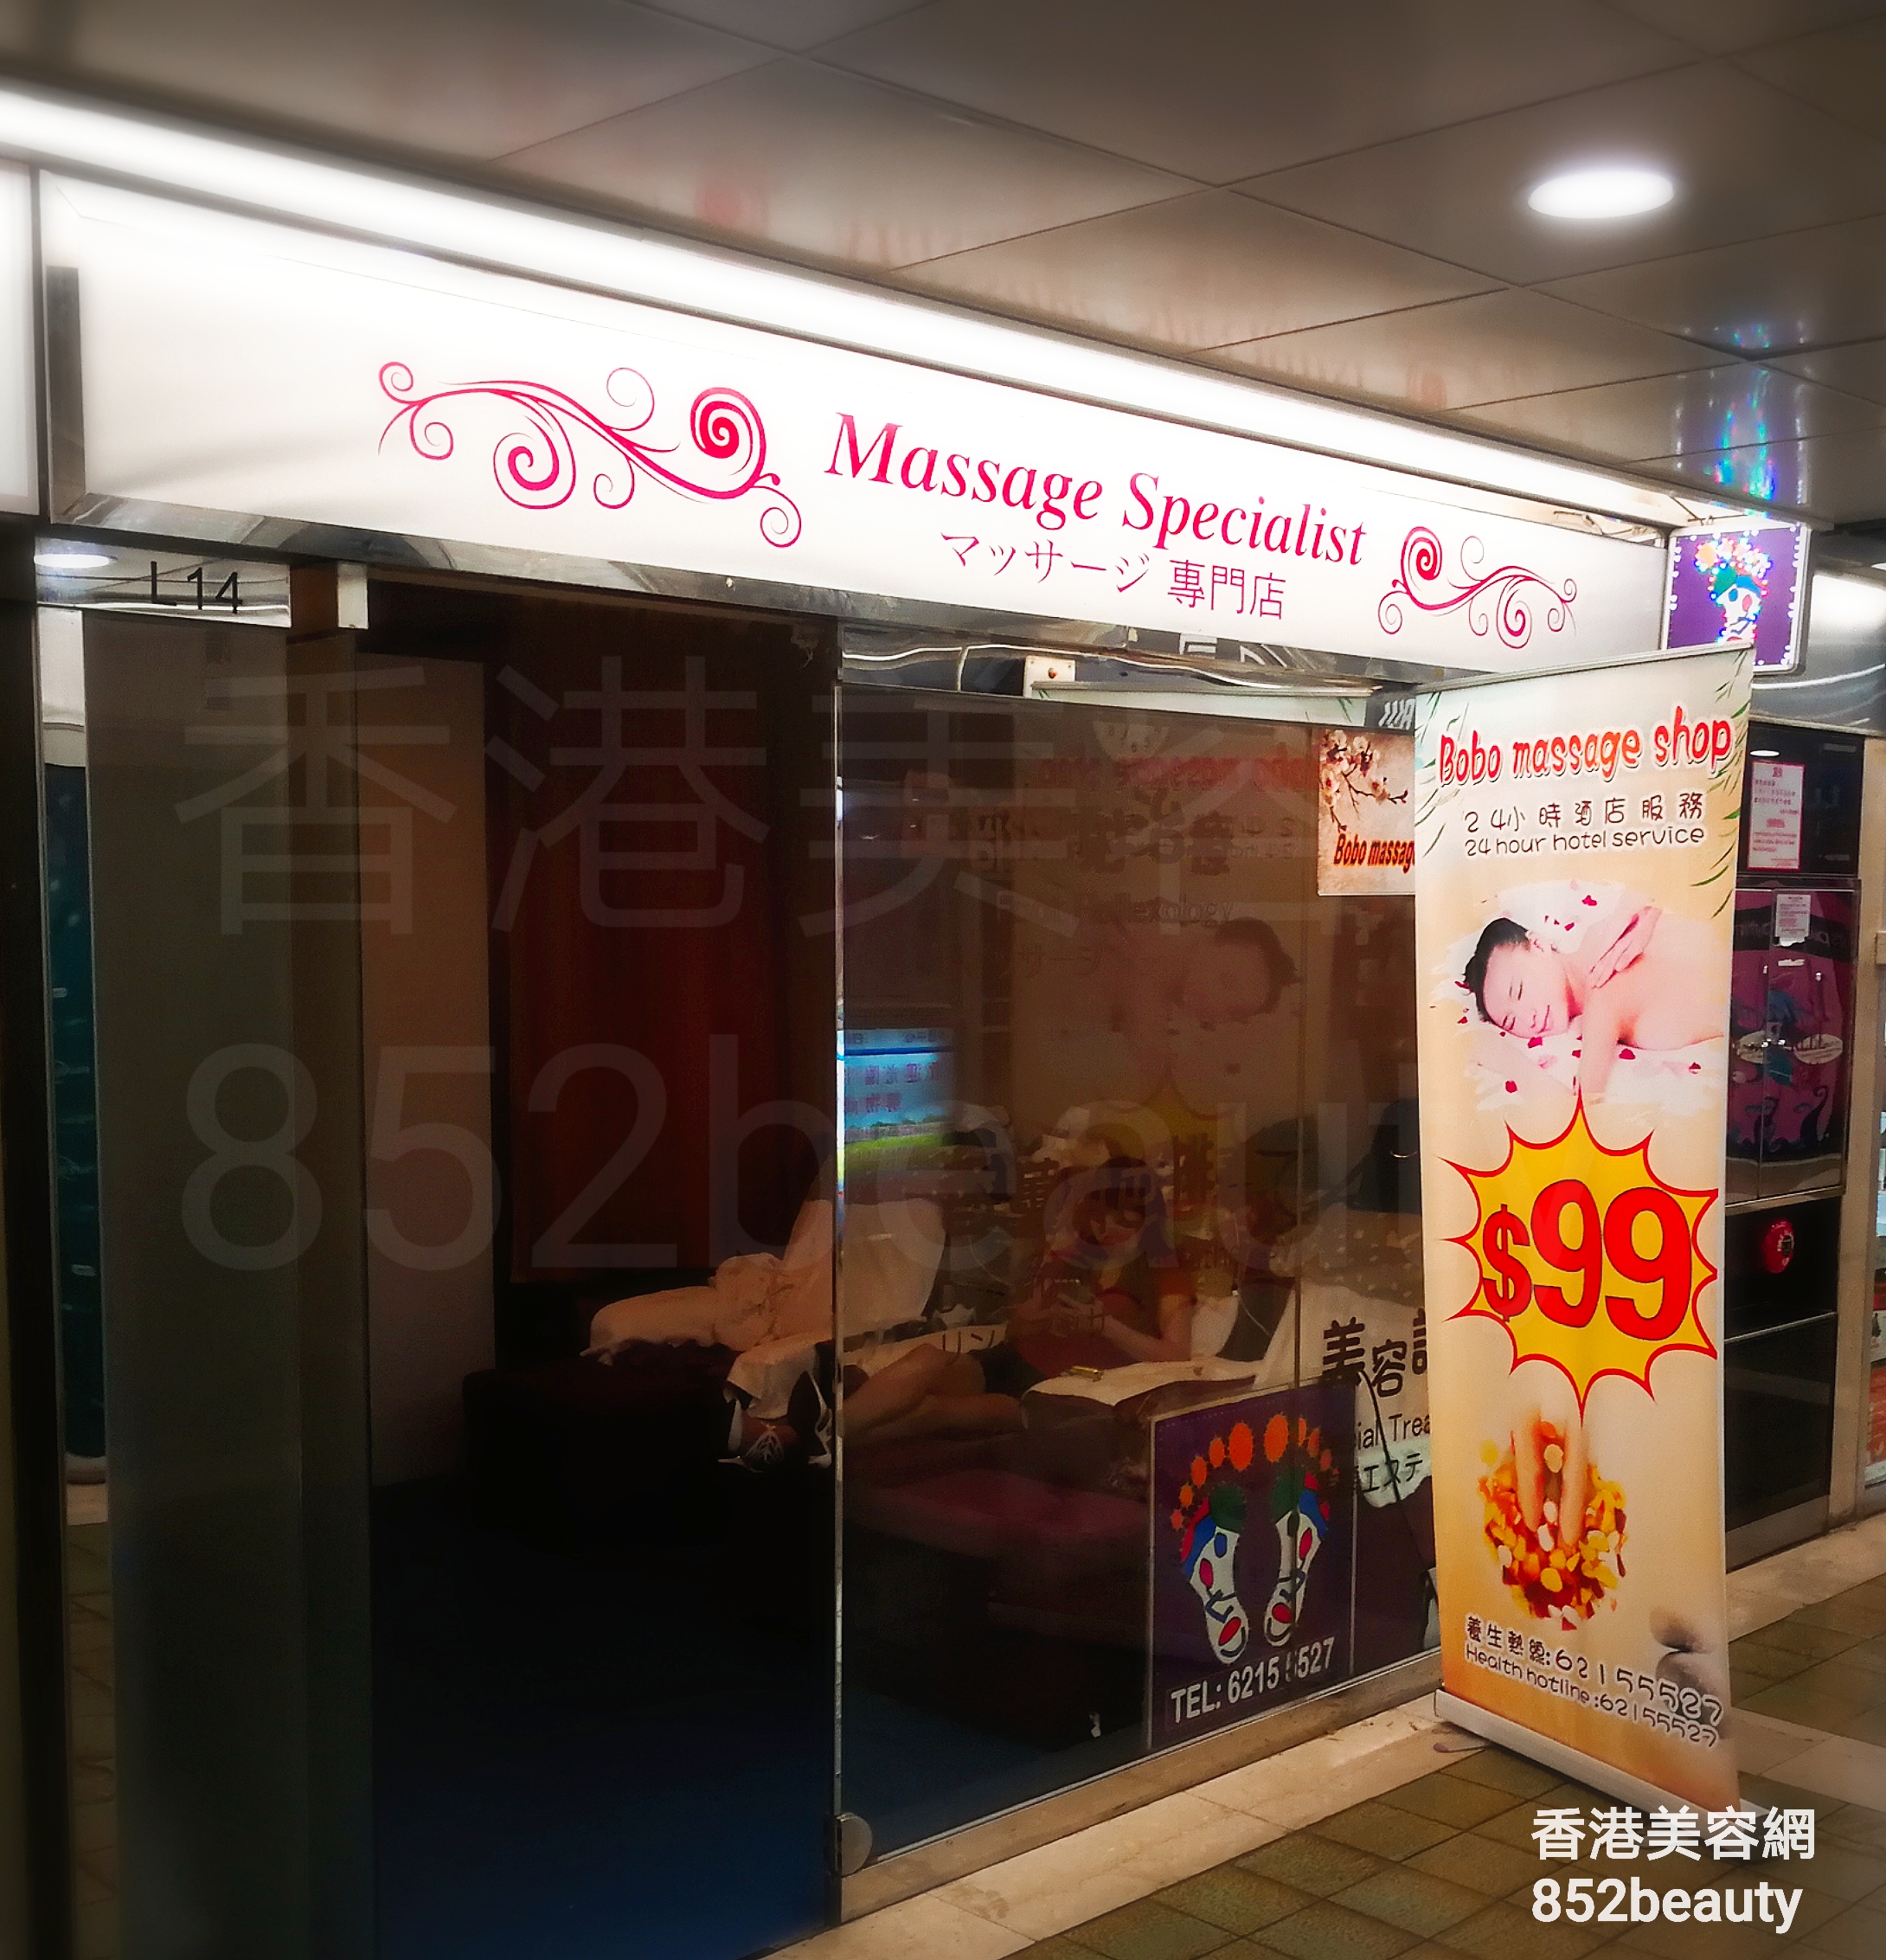 Massage/SPA: BoBo massage shop